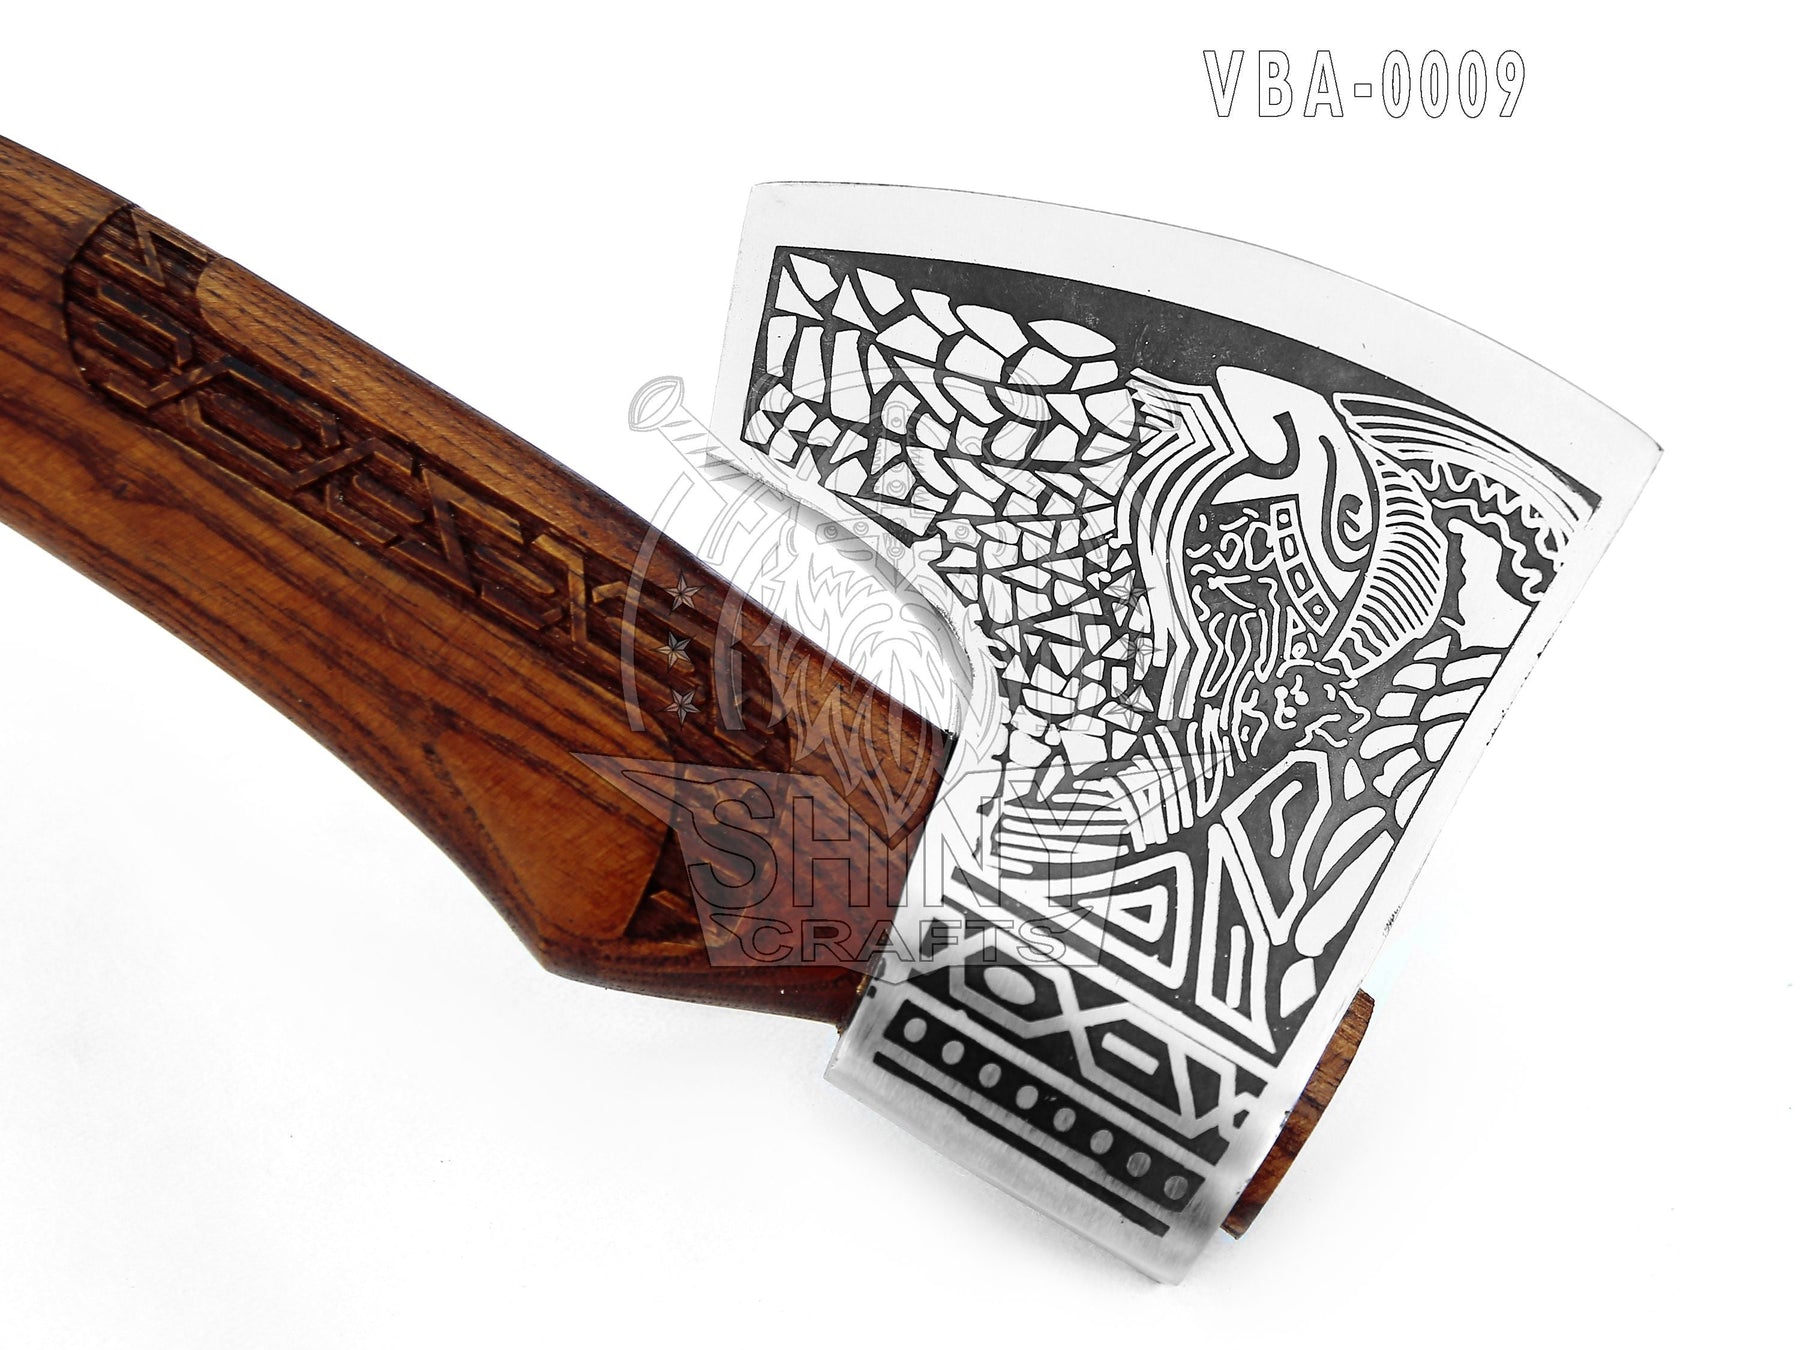 Custom Handmade Carbon Steel Viking Knife Odin Raven Head Hilt 6